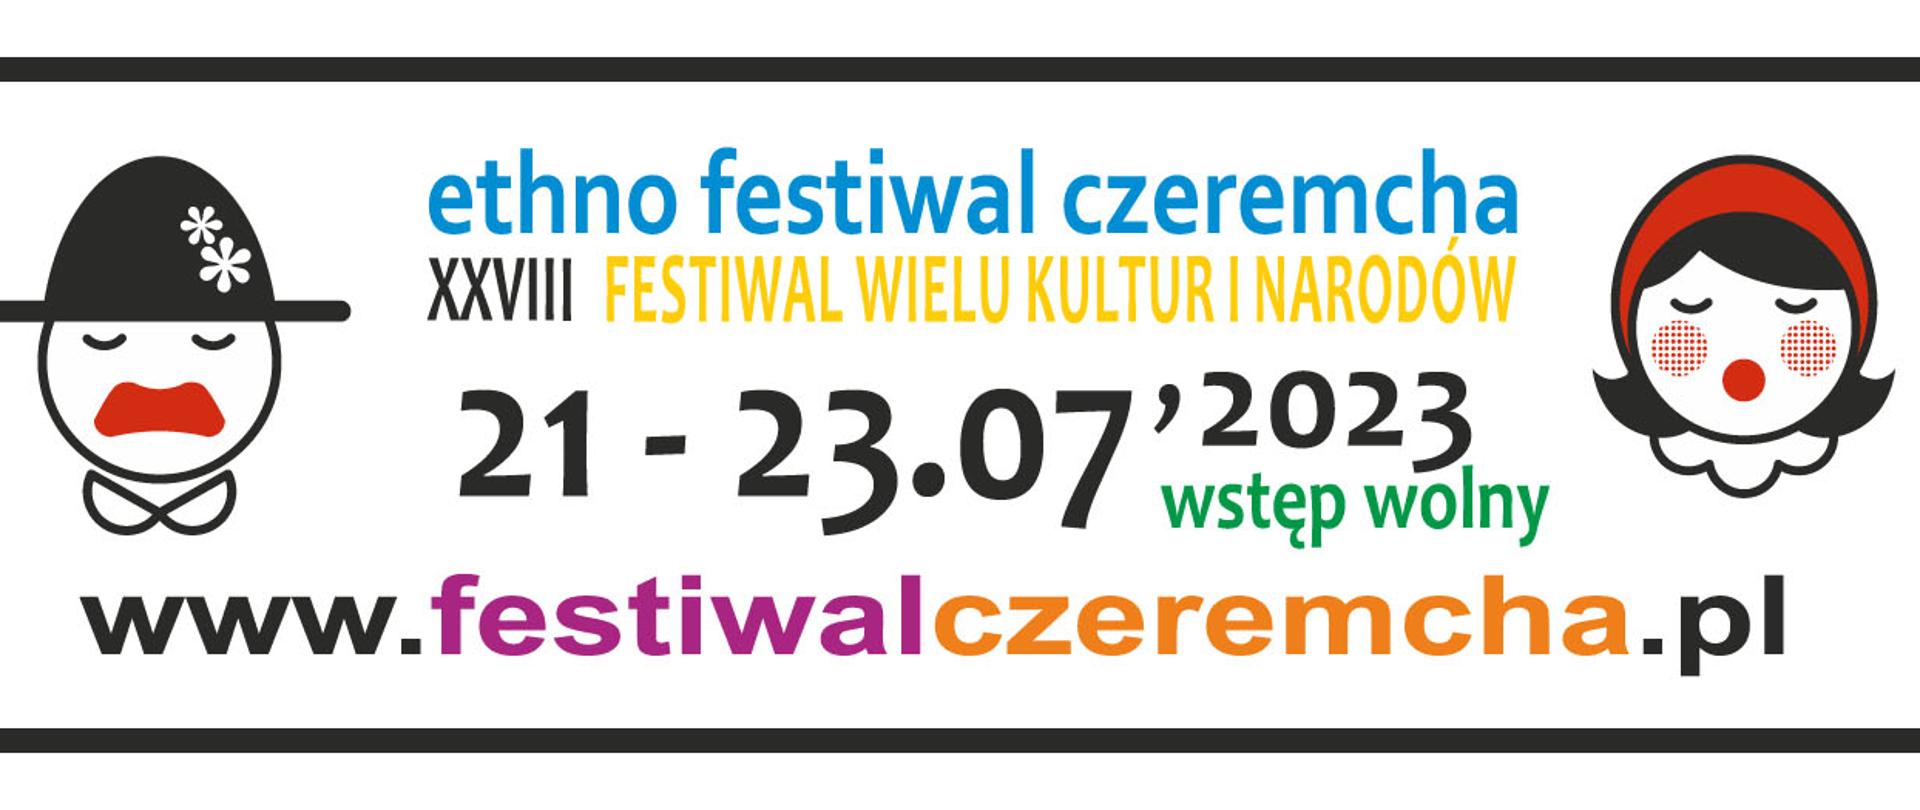 ethno festiwal Czeremcha 21023.07.2023 wstęp wolny. www.festiwalczeremcha.pl